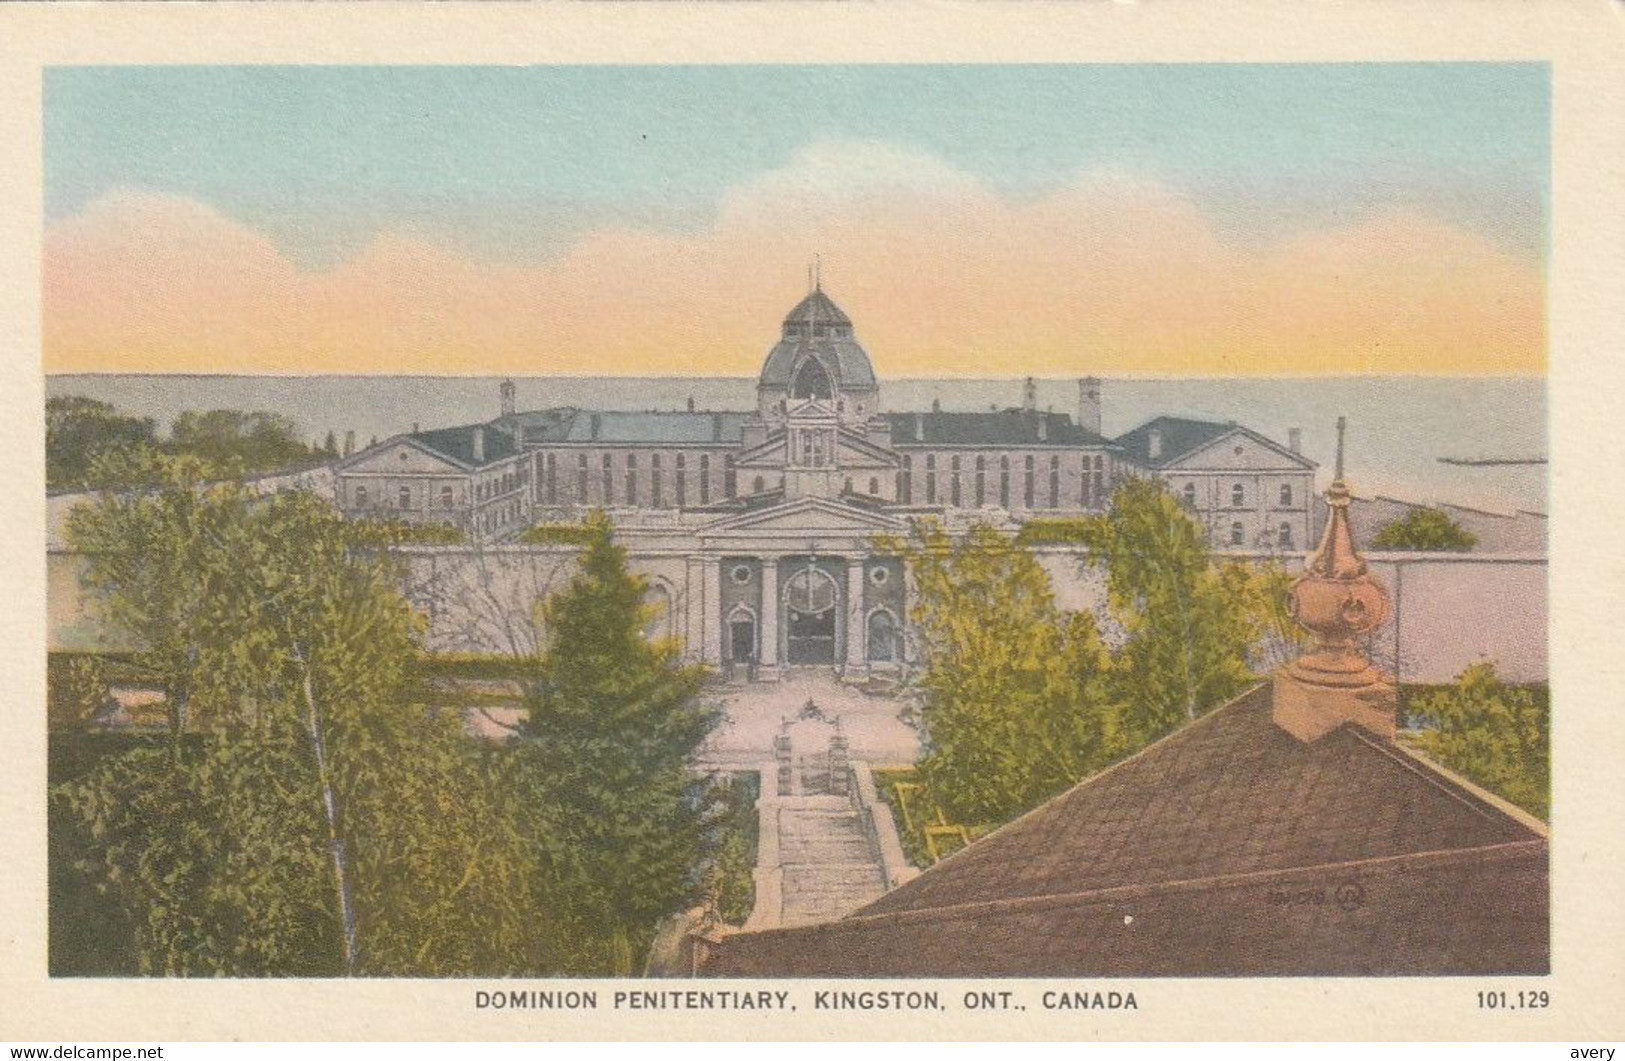 Dominion Penitentiary, Kingston, Ontario - Kingston